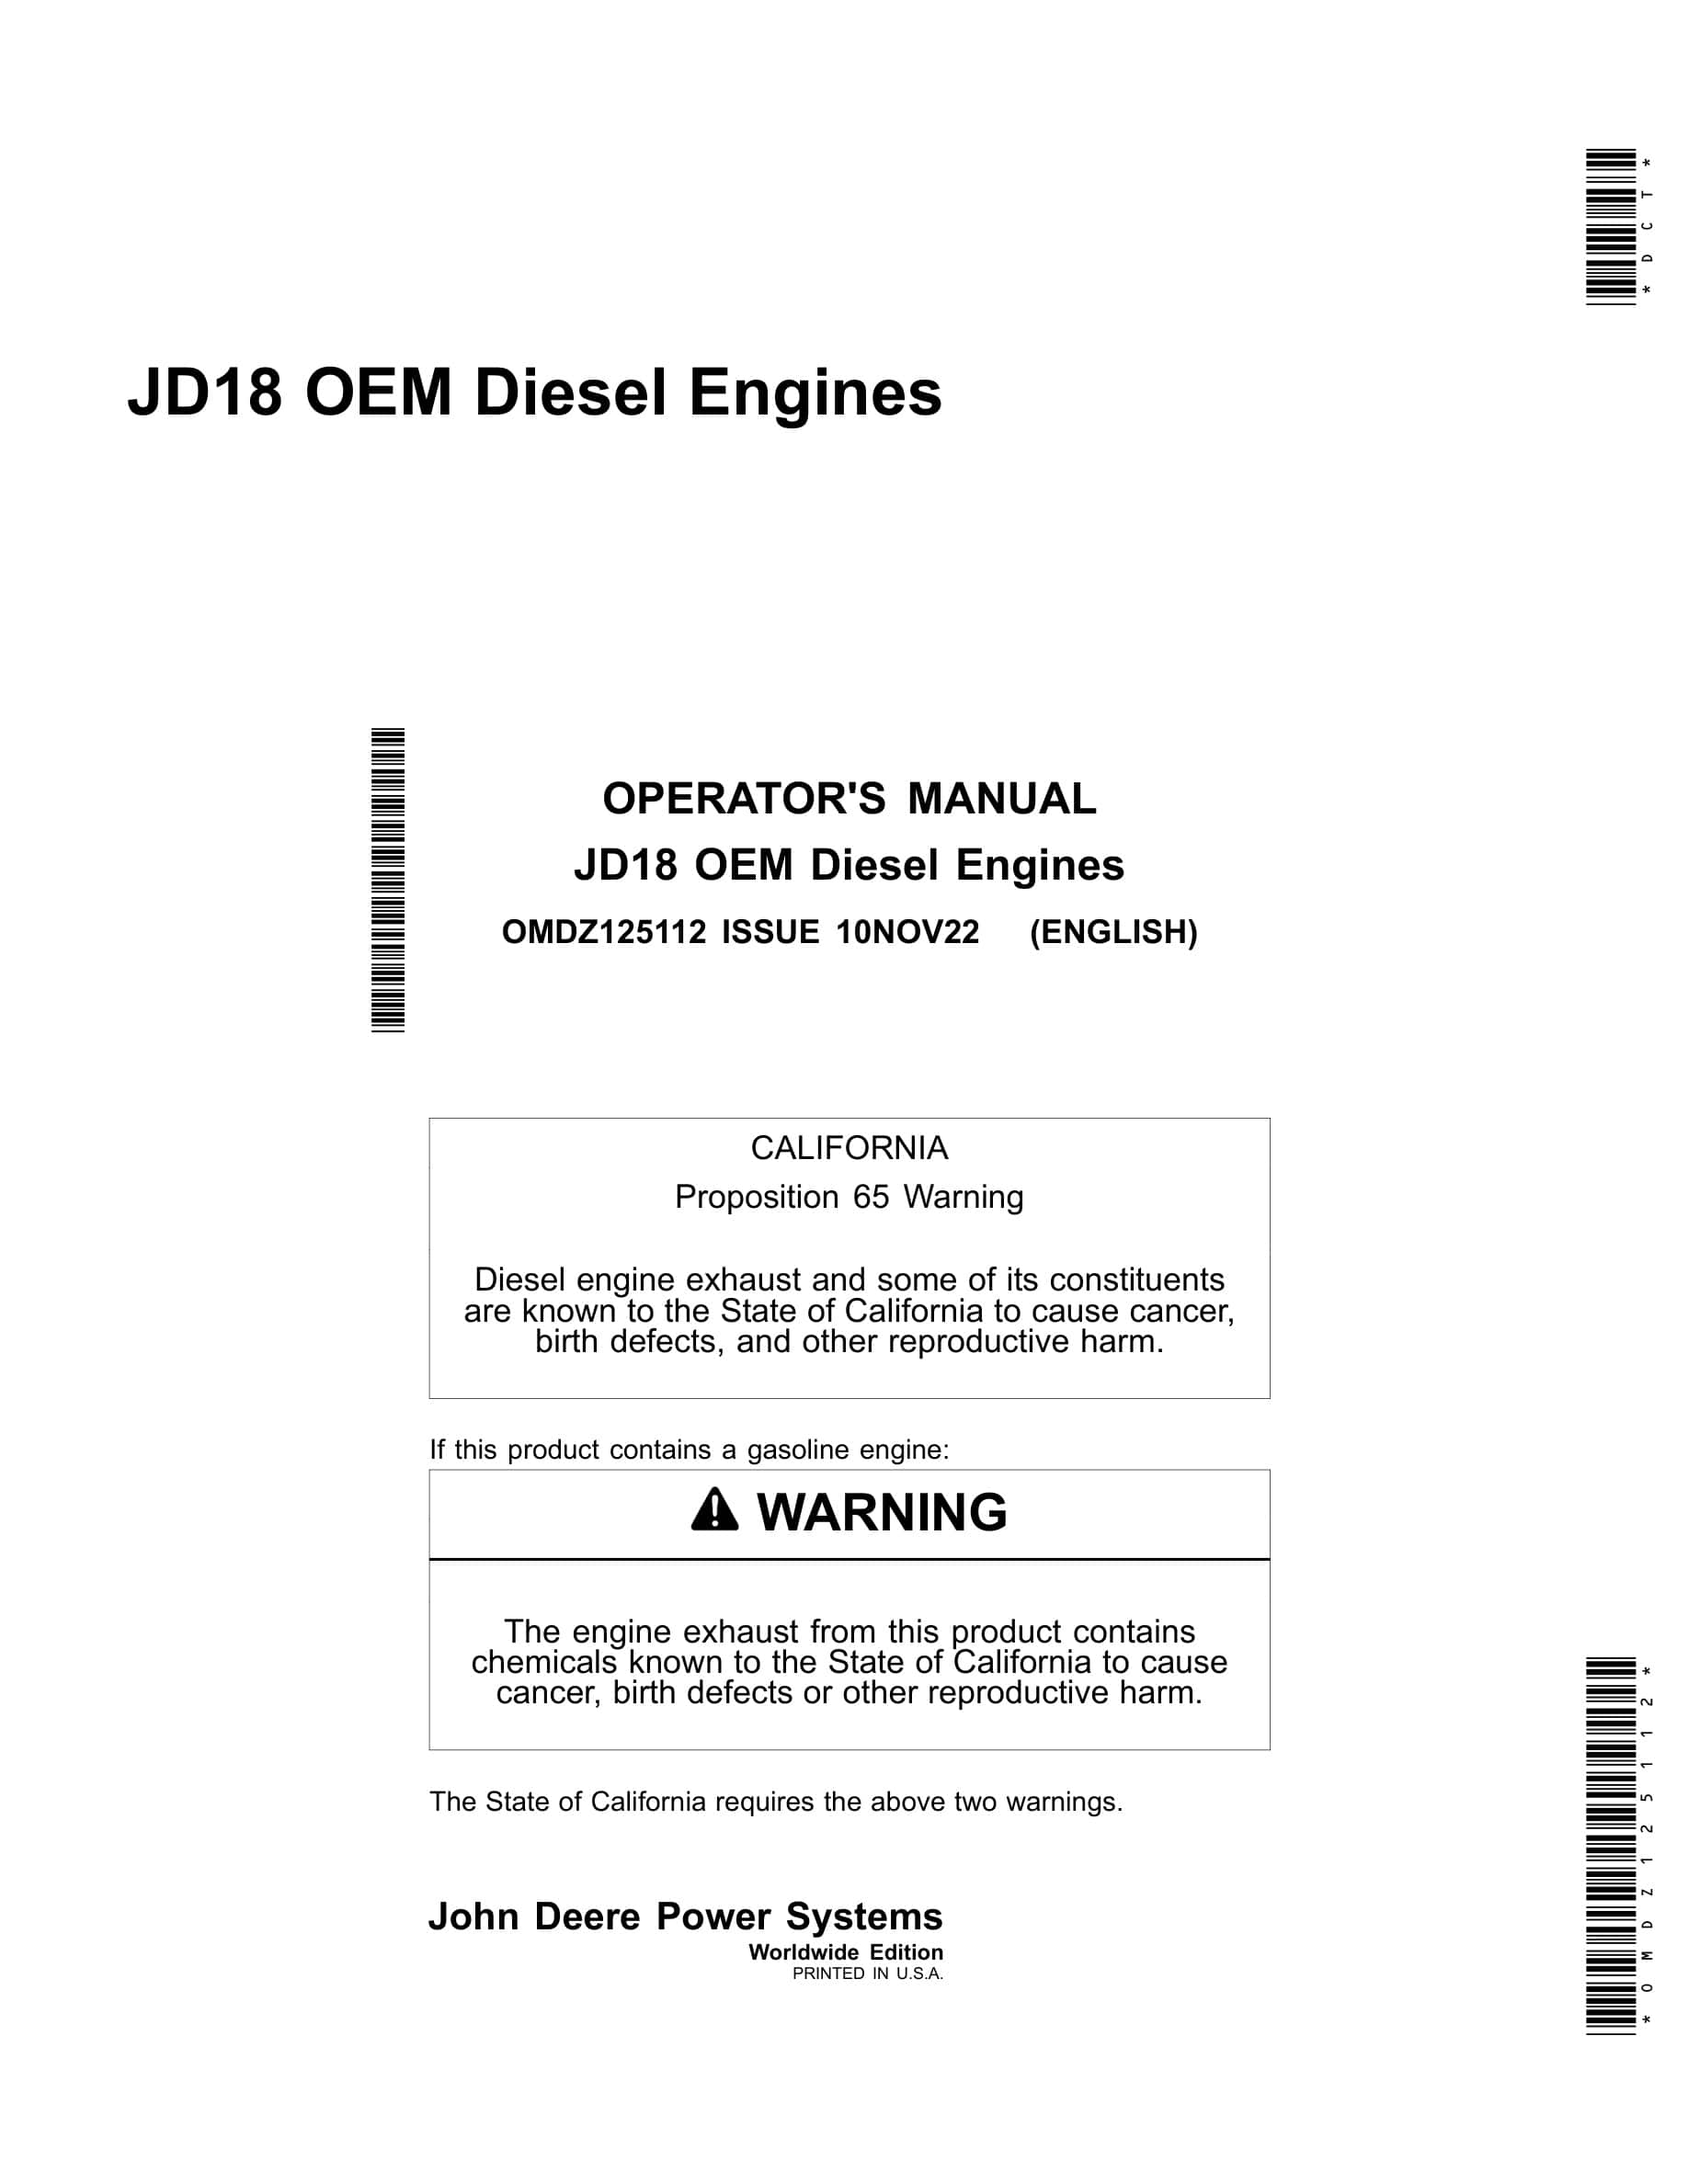 John Deere PowerTech JD18 OEM Diesel Engines Operator Manual OMDZ125112-1